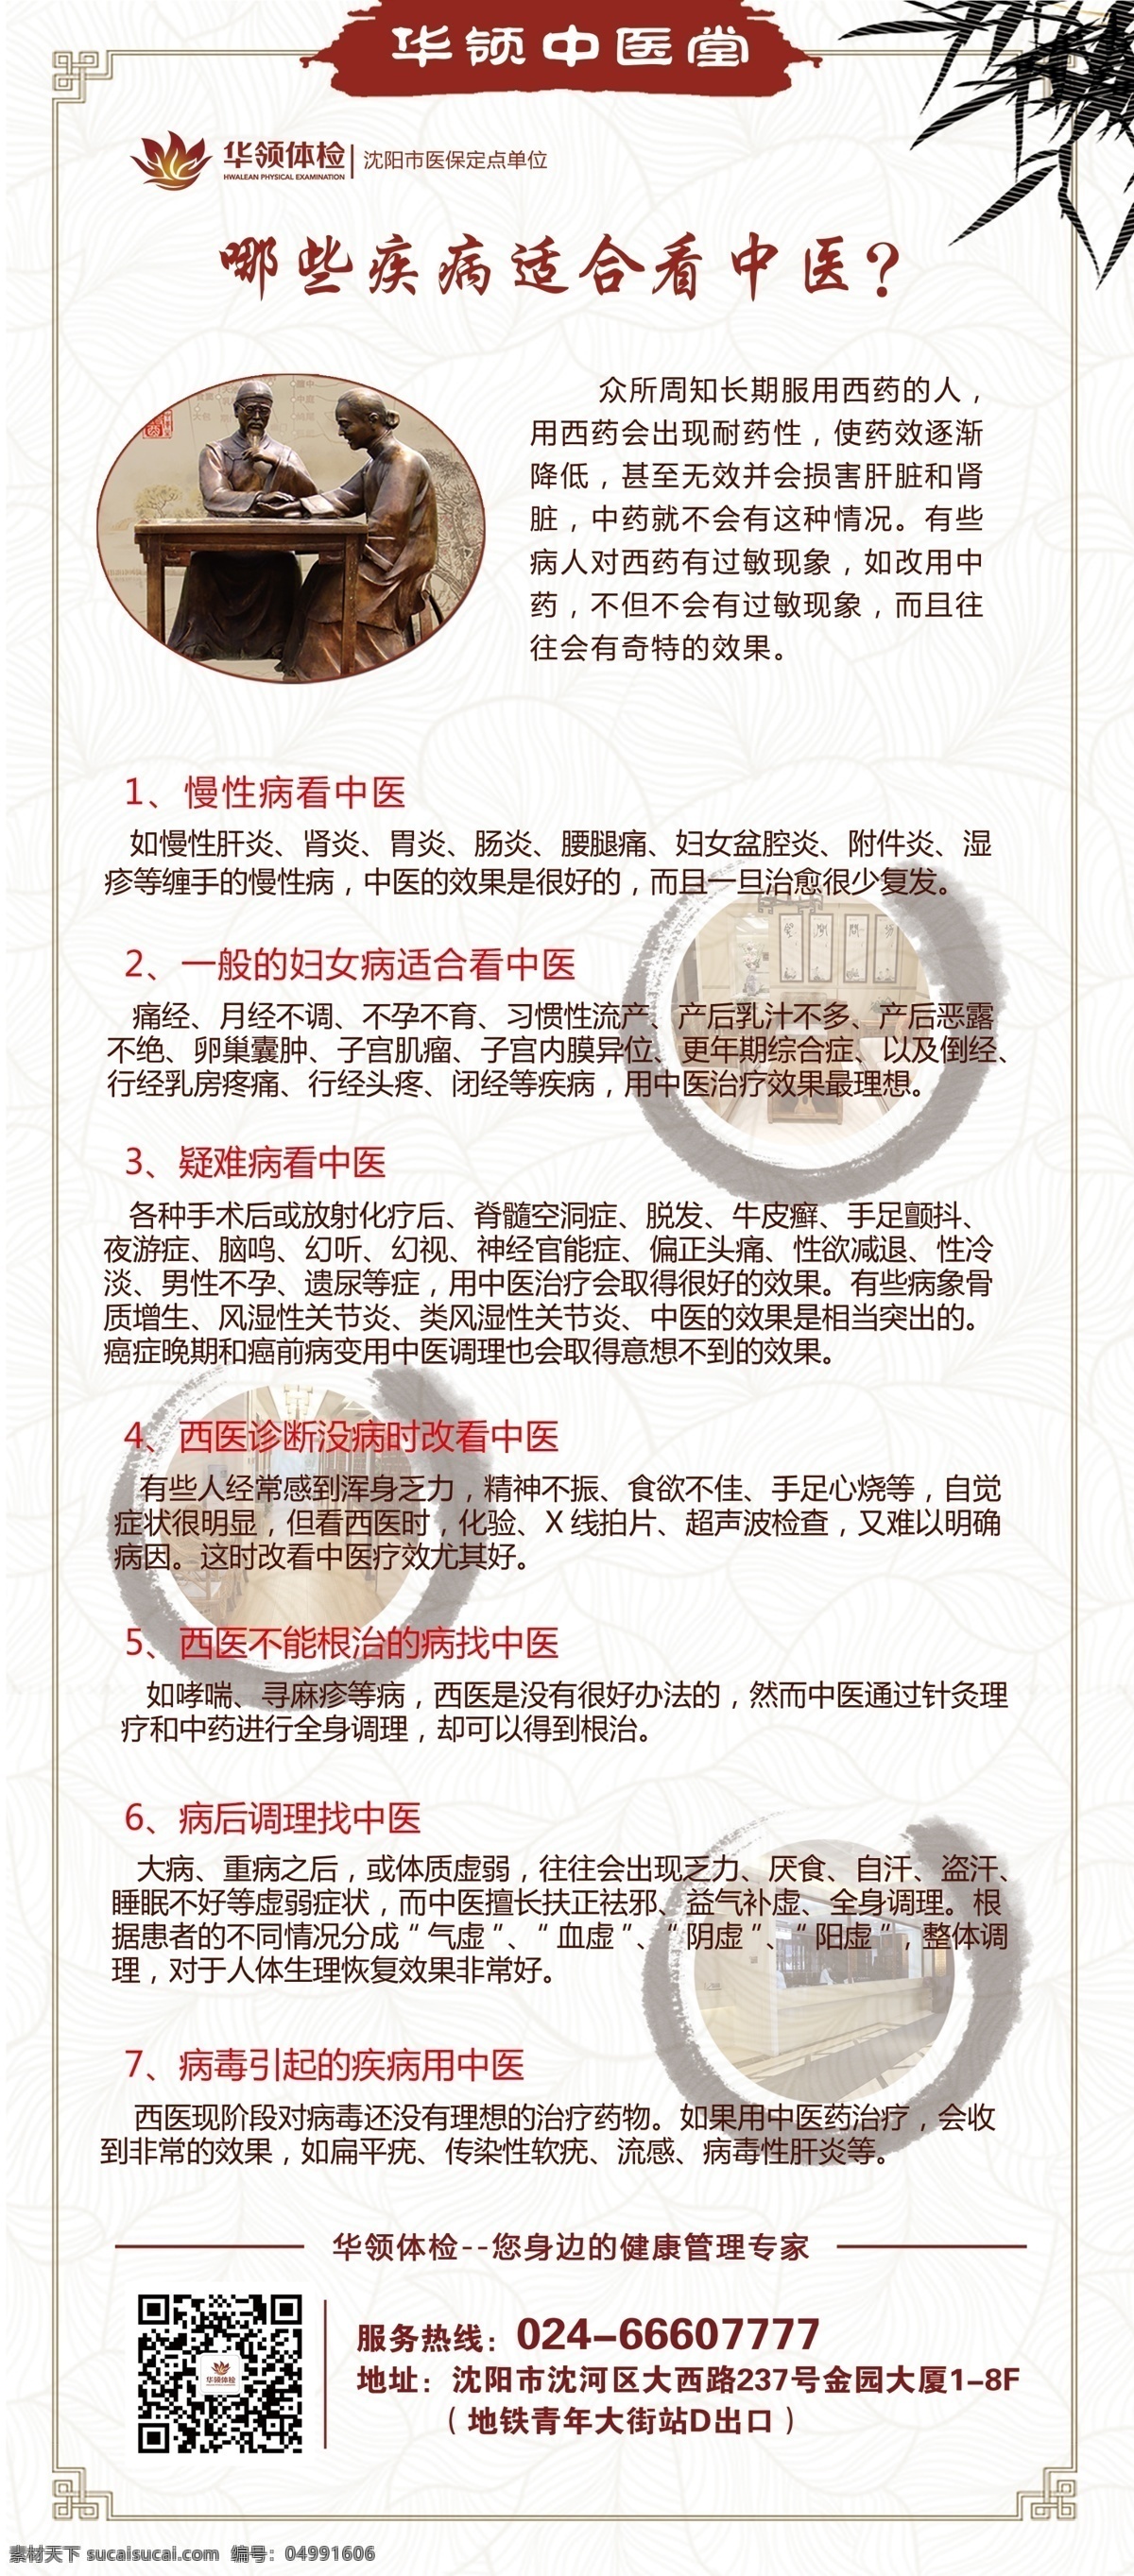 中医展架 中医 中国风 古代 简约 高档 时尚 相纸 海报 展架 模板 分层素材